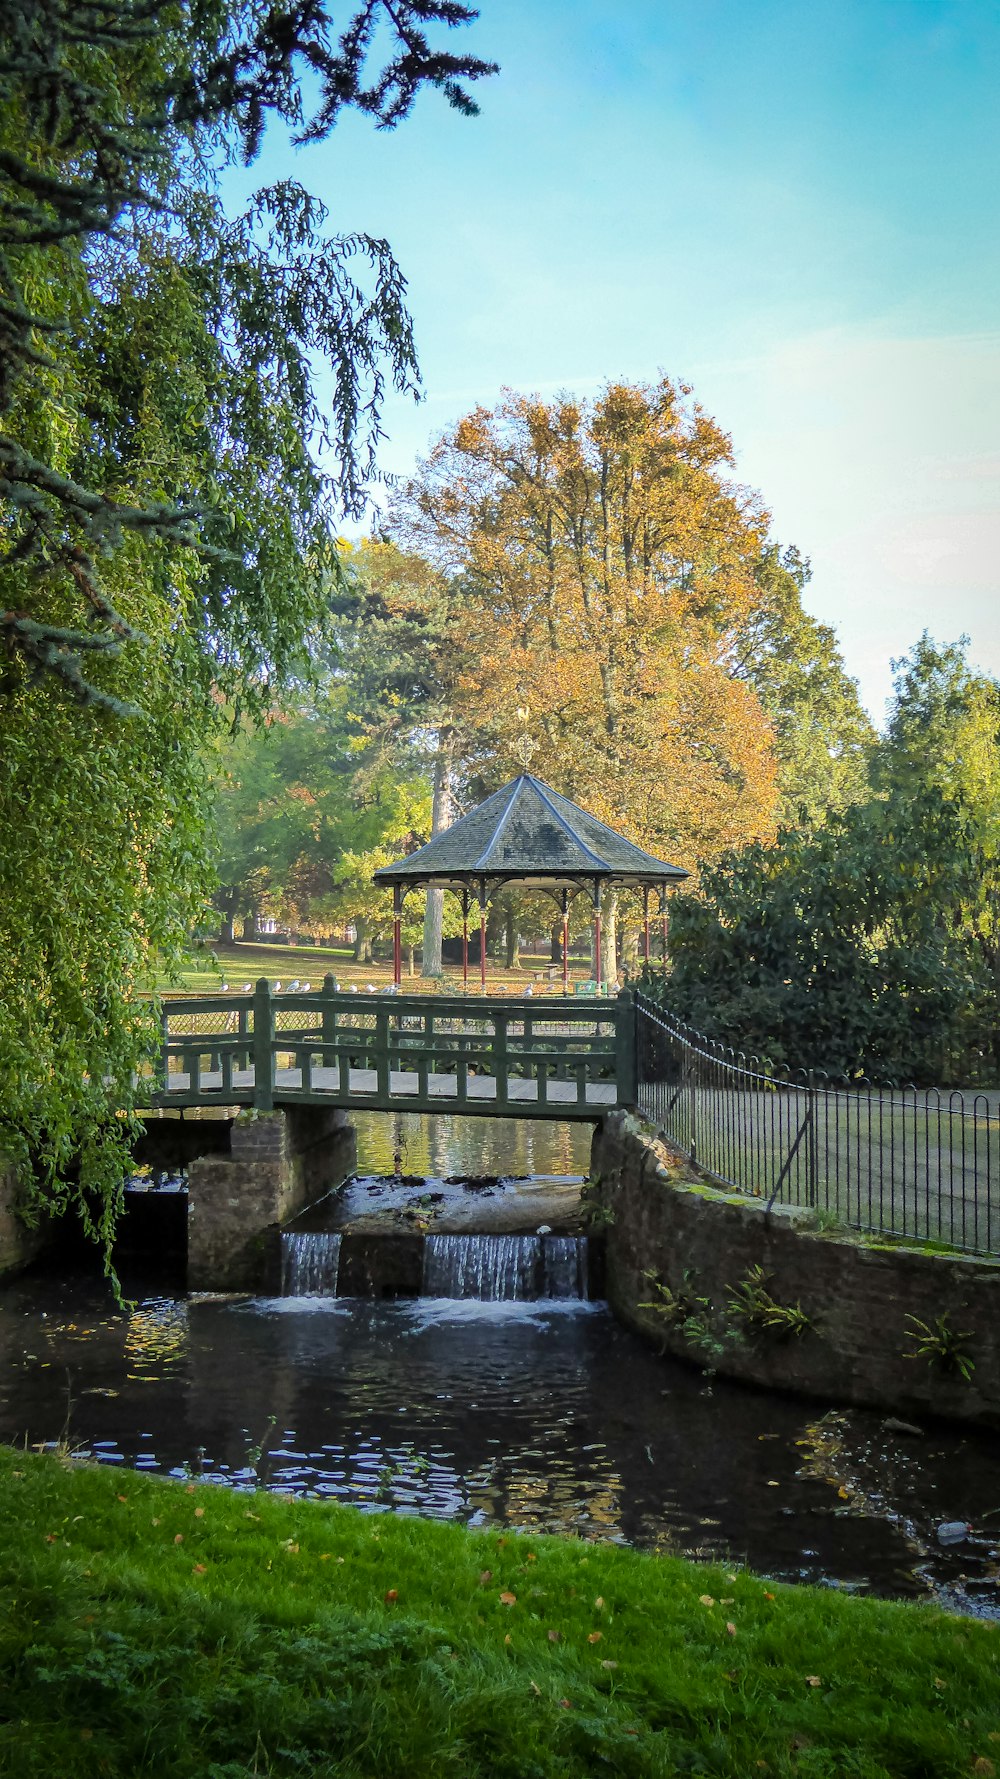 a small bridge over a small stream in a park